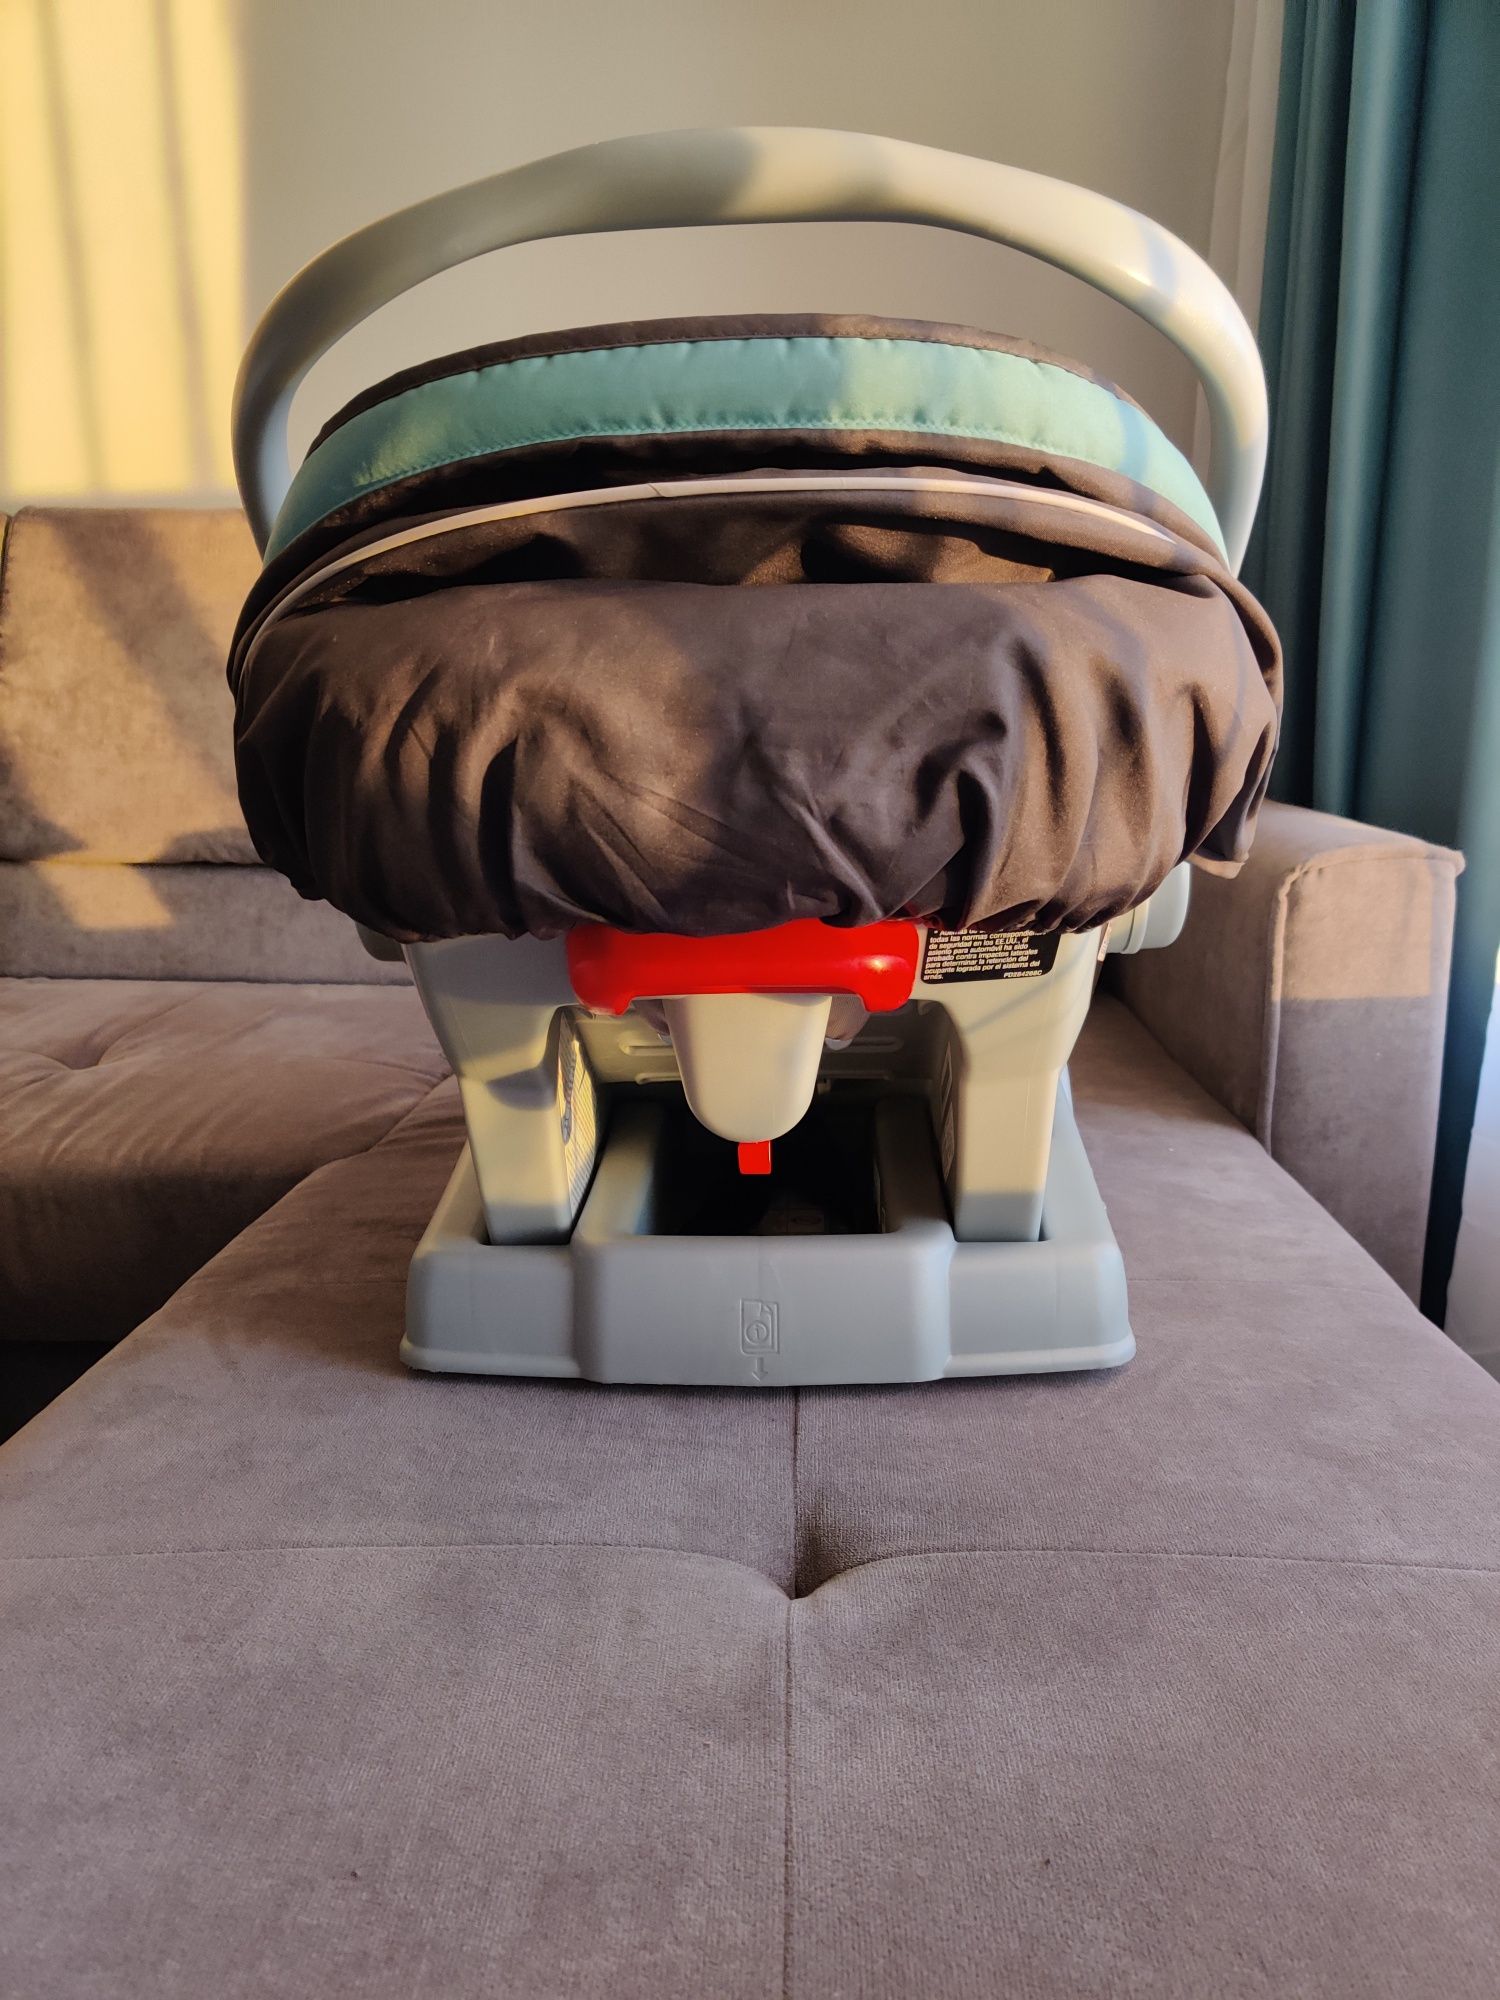 Бебешко столче/кошница за кола